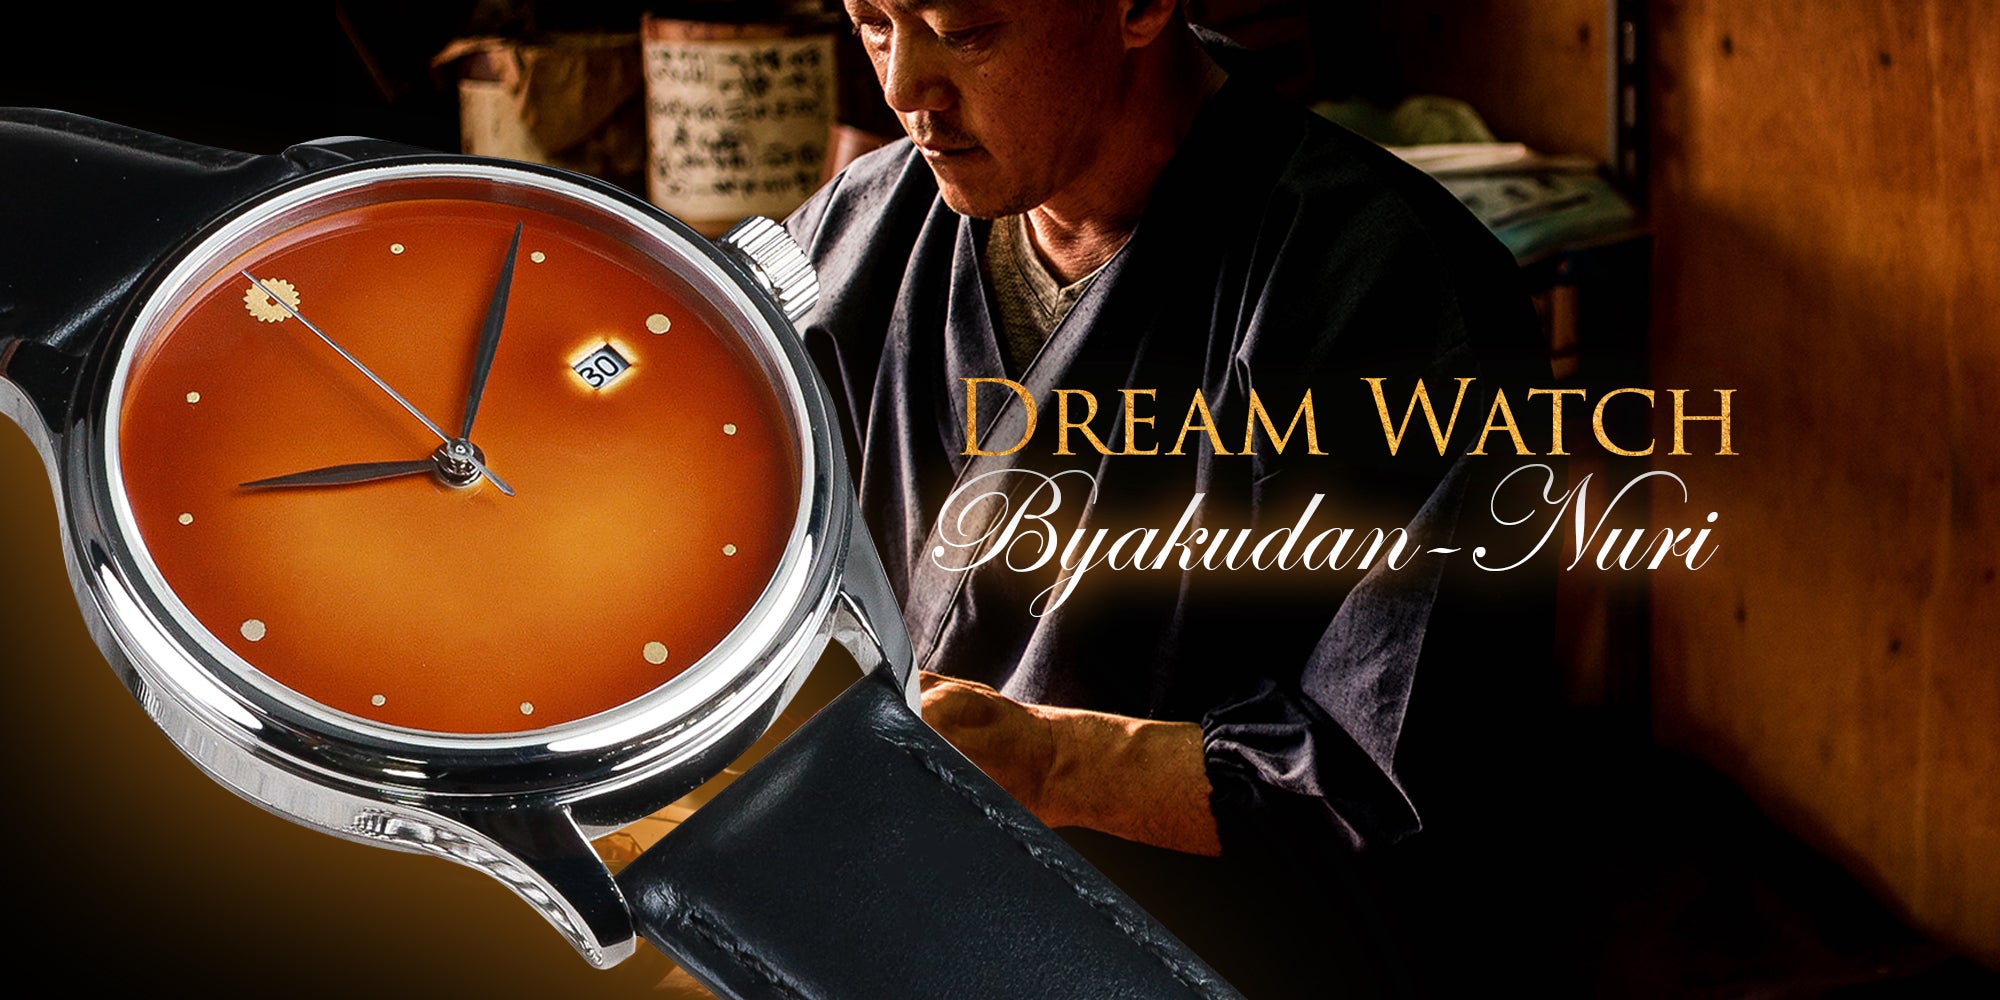 Dream Watch Byakudan Nuri urushi dial watch - Exquisite craftsmanship by Echizen Watch and Wancher Watch